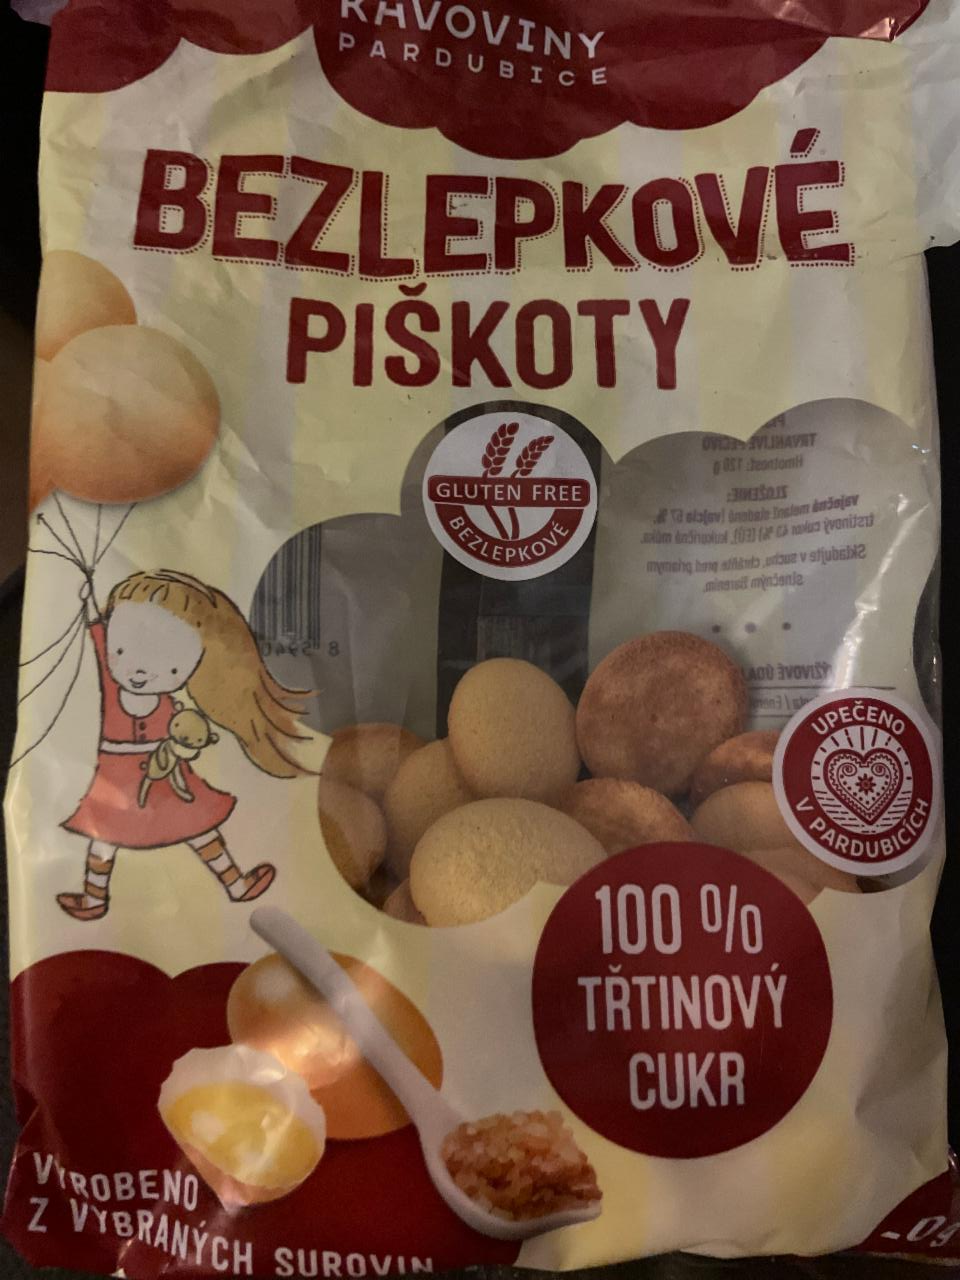 Fotografie - Bezlepkové piškoty Kávoviny Pardubice